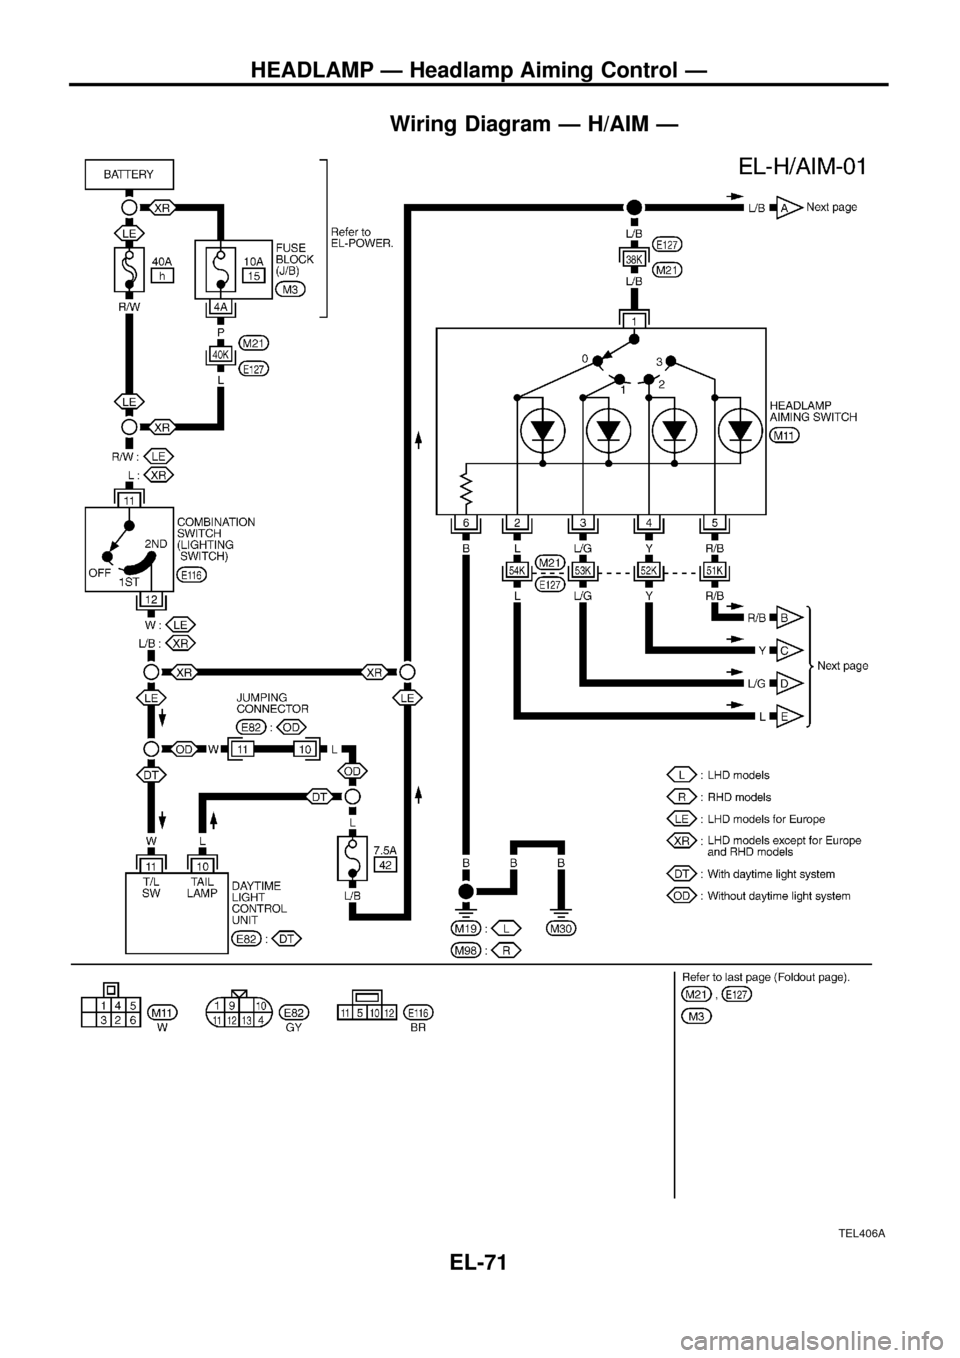 NISSAN PATROL 1998 Y61 / 5.G Electrical System User Guide Wiring Diagram Ð H/AIM Ð
TEL406A
HEADLAMP Ð Headlamp Aiming Control Ð
EL-71 